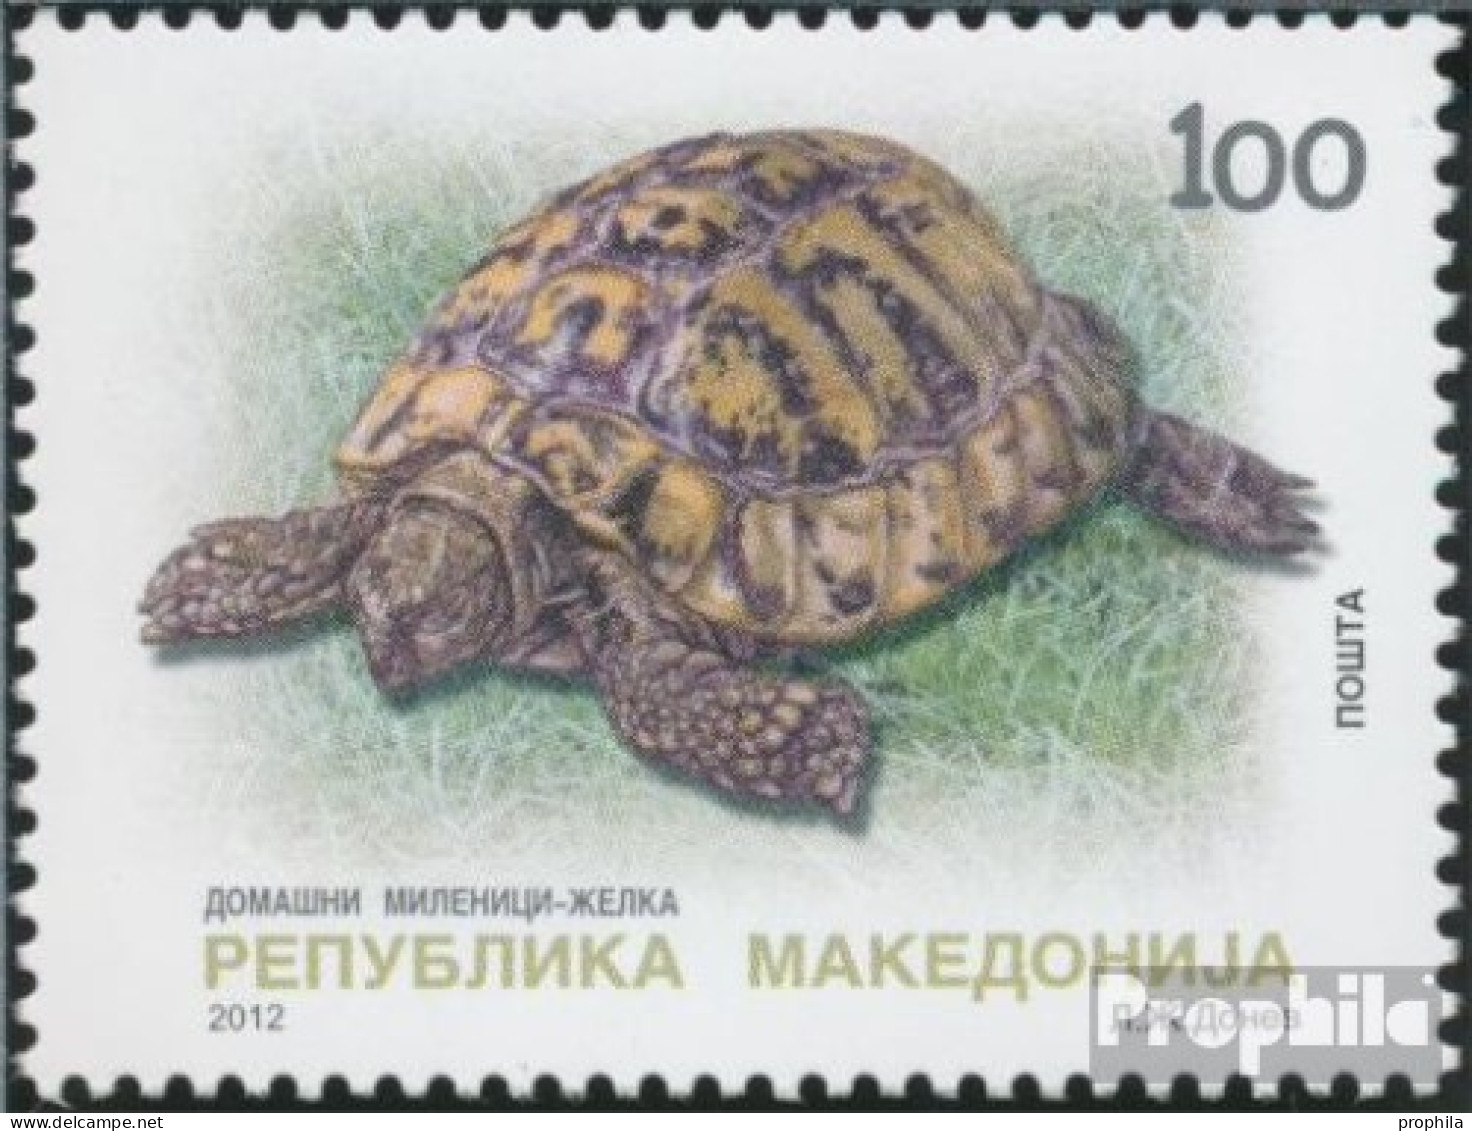 Makedonien 621 (kompl.Ausg.) Postfrisch 2012 Schildkröte - Makedonien